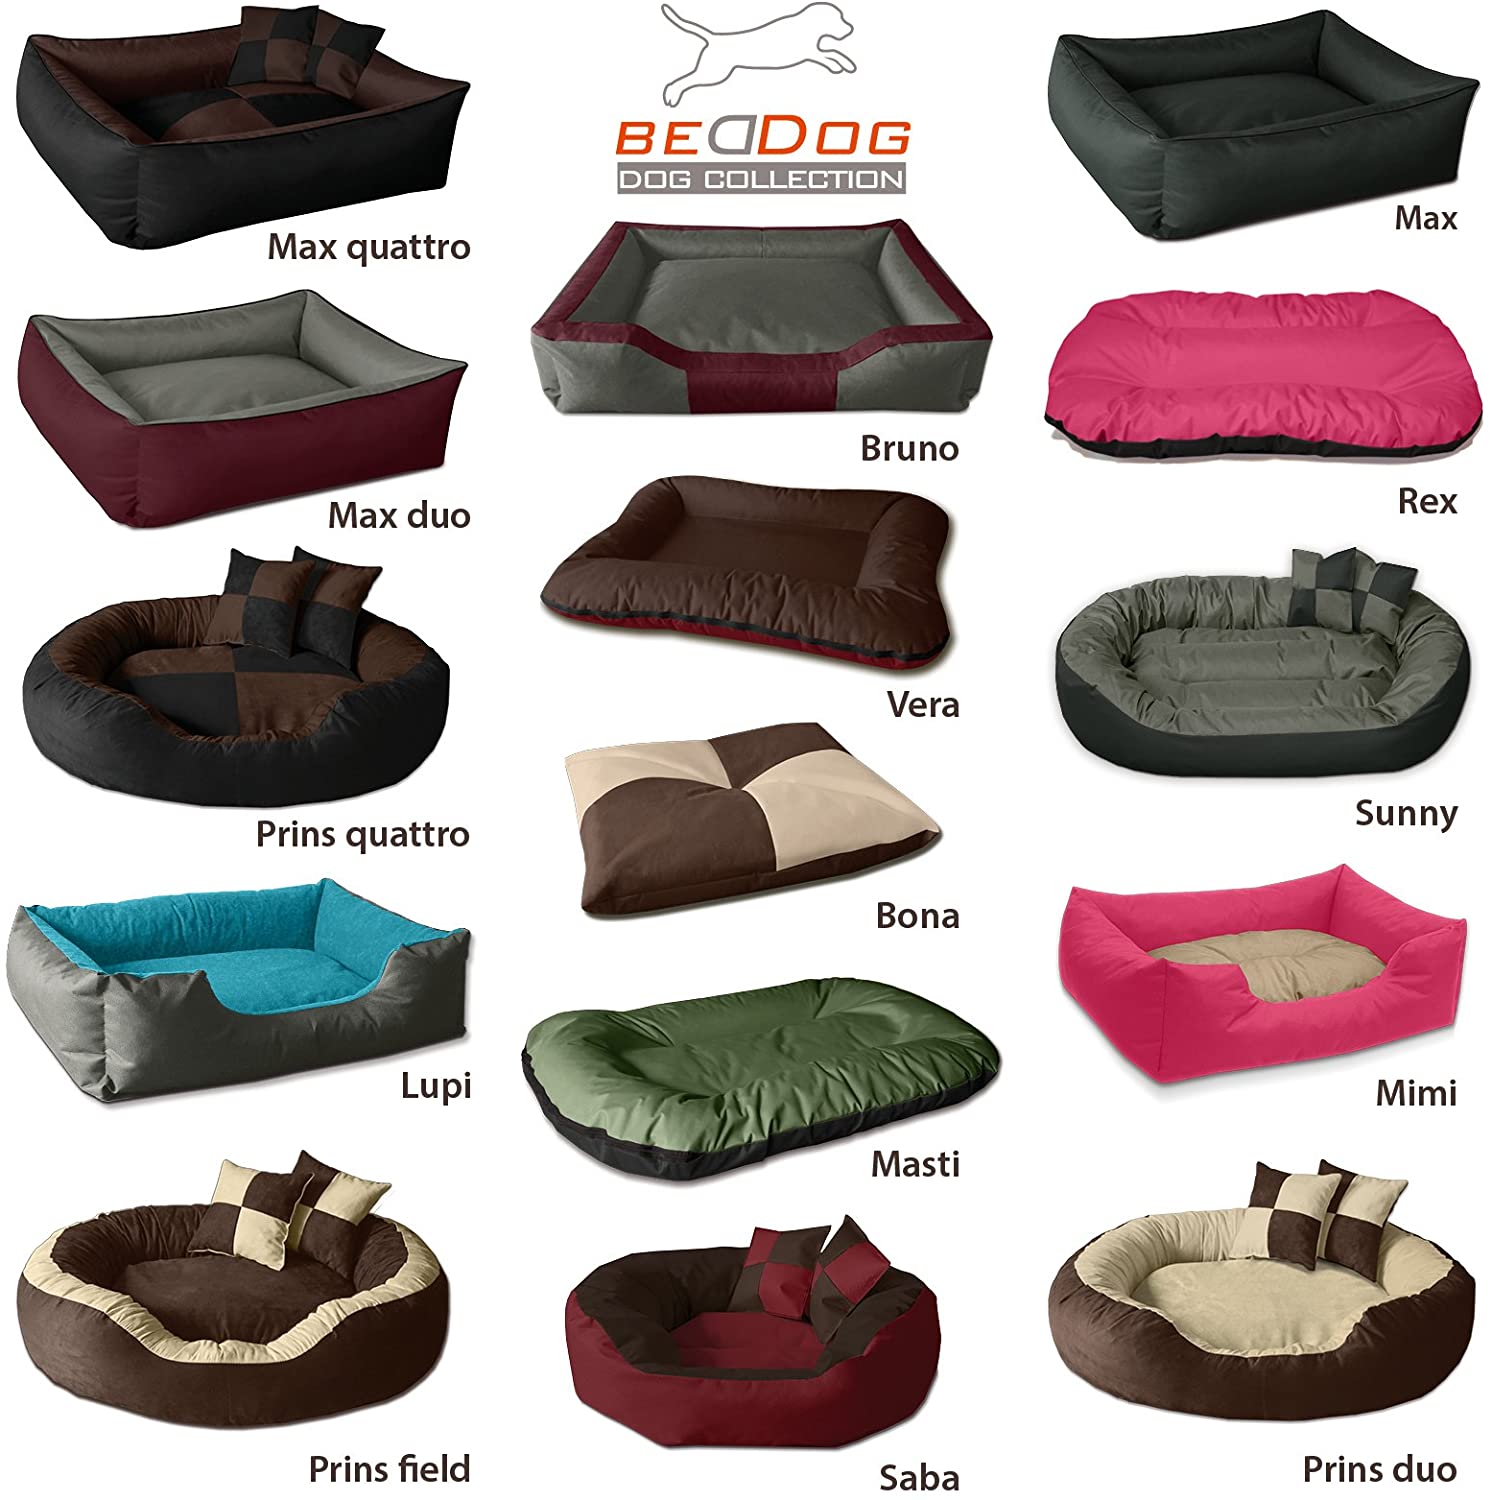  BedDog® LUPI colchón para Perro S hasta XXXL, 24 Colores, Cama para Perro, sofá para Perro, Cesta para Perro 